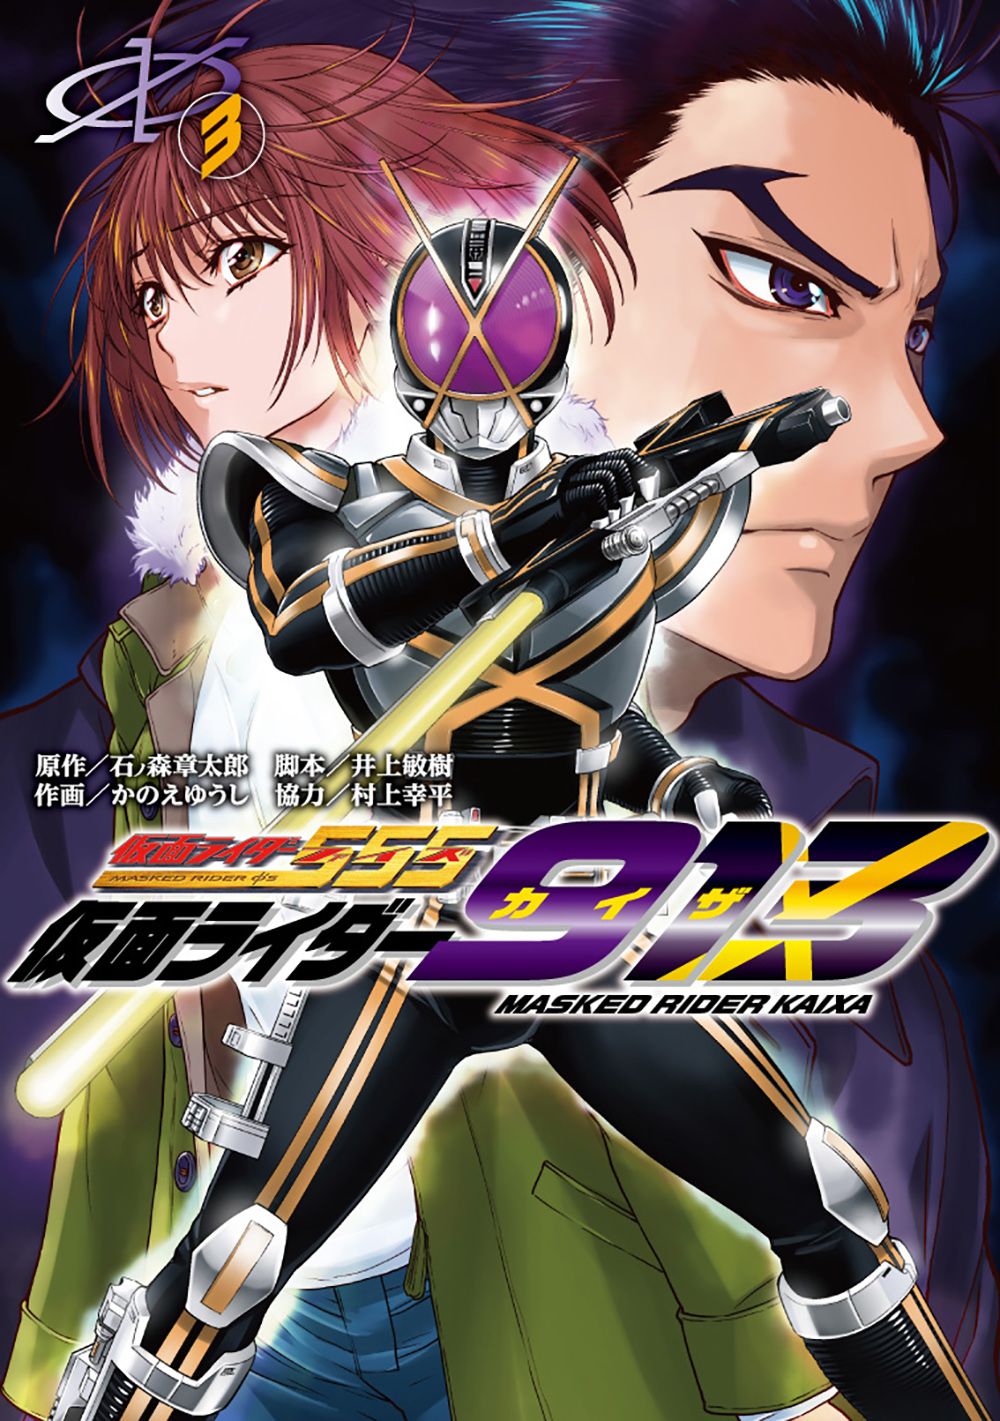 Kamen Rider 913 (Kaixa) cover 2